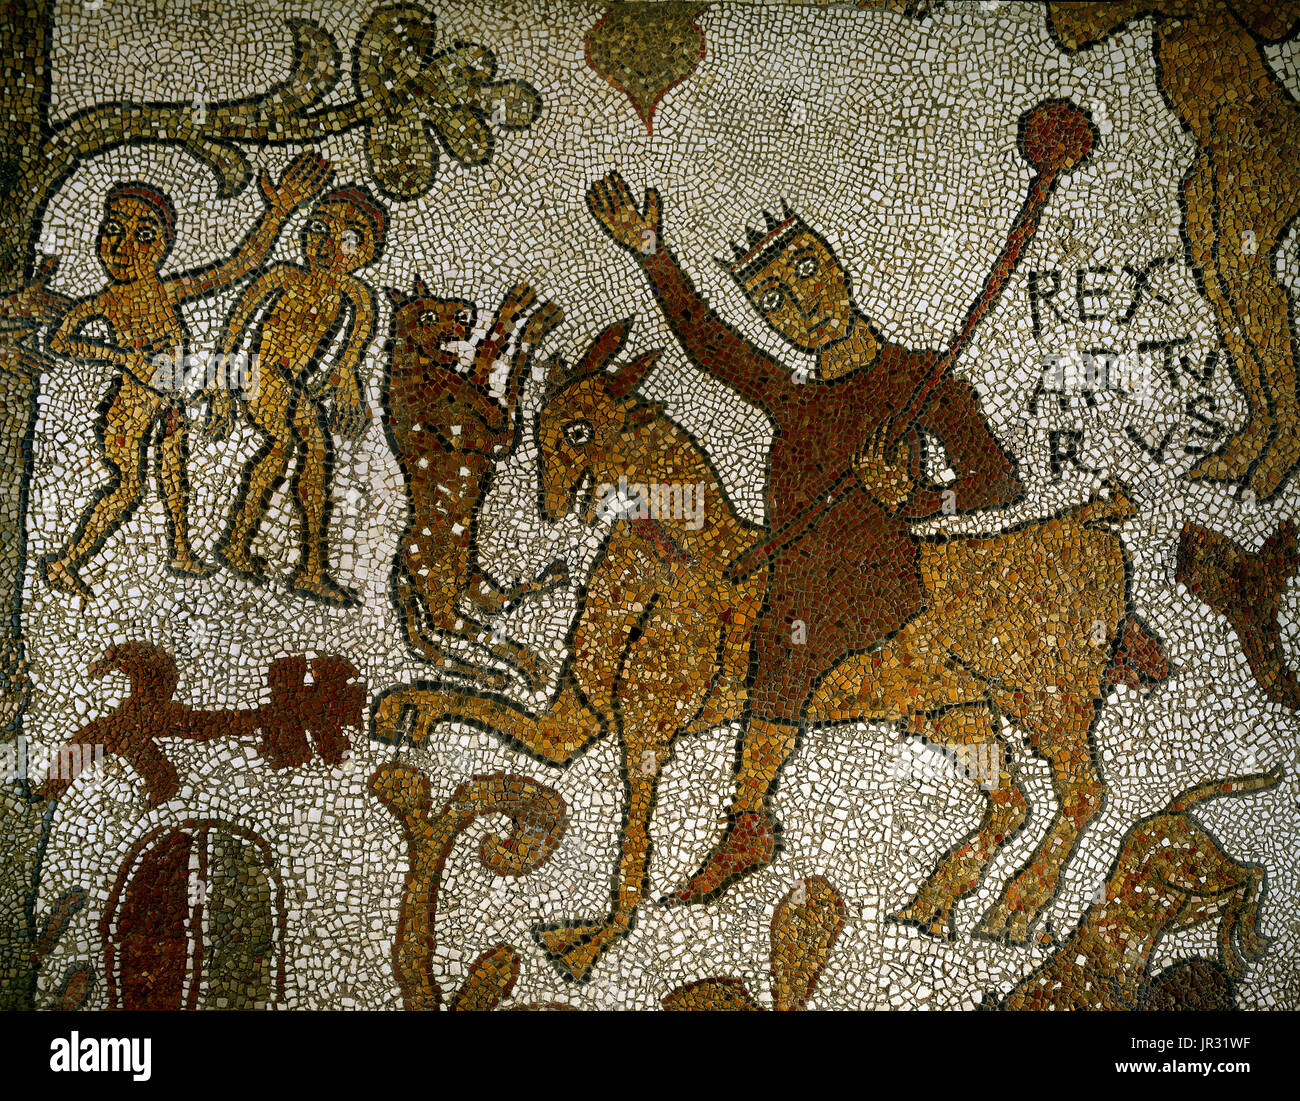 King Arthur reitet, um den Gral zu suchen. Szene aus dem Mosaik-Fußboden der Kathedrale von Otranto, Süditalien. Das Mosaik läuft die gesamte Länge des Kirchenschiffs, Heiligtum und Apsis ist 12. Jahrhundert in Datum, zwischen 1163 und 1165 von einer Gruppe von Künstlern unter der Leitung von Pantaleone, Basilianer Mönch aus dem Kloster von San Nicola di Casole geschaffen. Es zeigt Szenen aus der alttestamentlichen und ritterlichen Zyklen sowie Figuren aus mittelalterlichen Bestiarien. King Arthur ist eine legendäre britische Führer des späten 5. und frühen 6. Jahrhundert, die nach mittelalterlichen Geschichten und Romanzen, die Verteidigung von Großbritannien führte Stockfoto